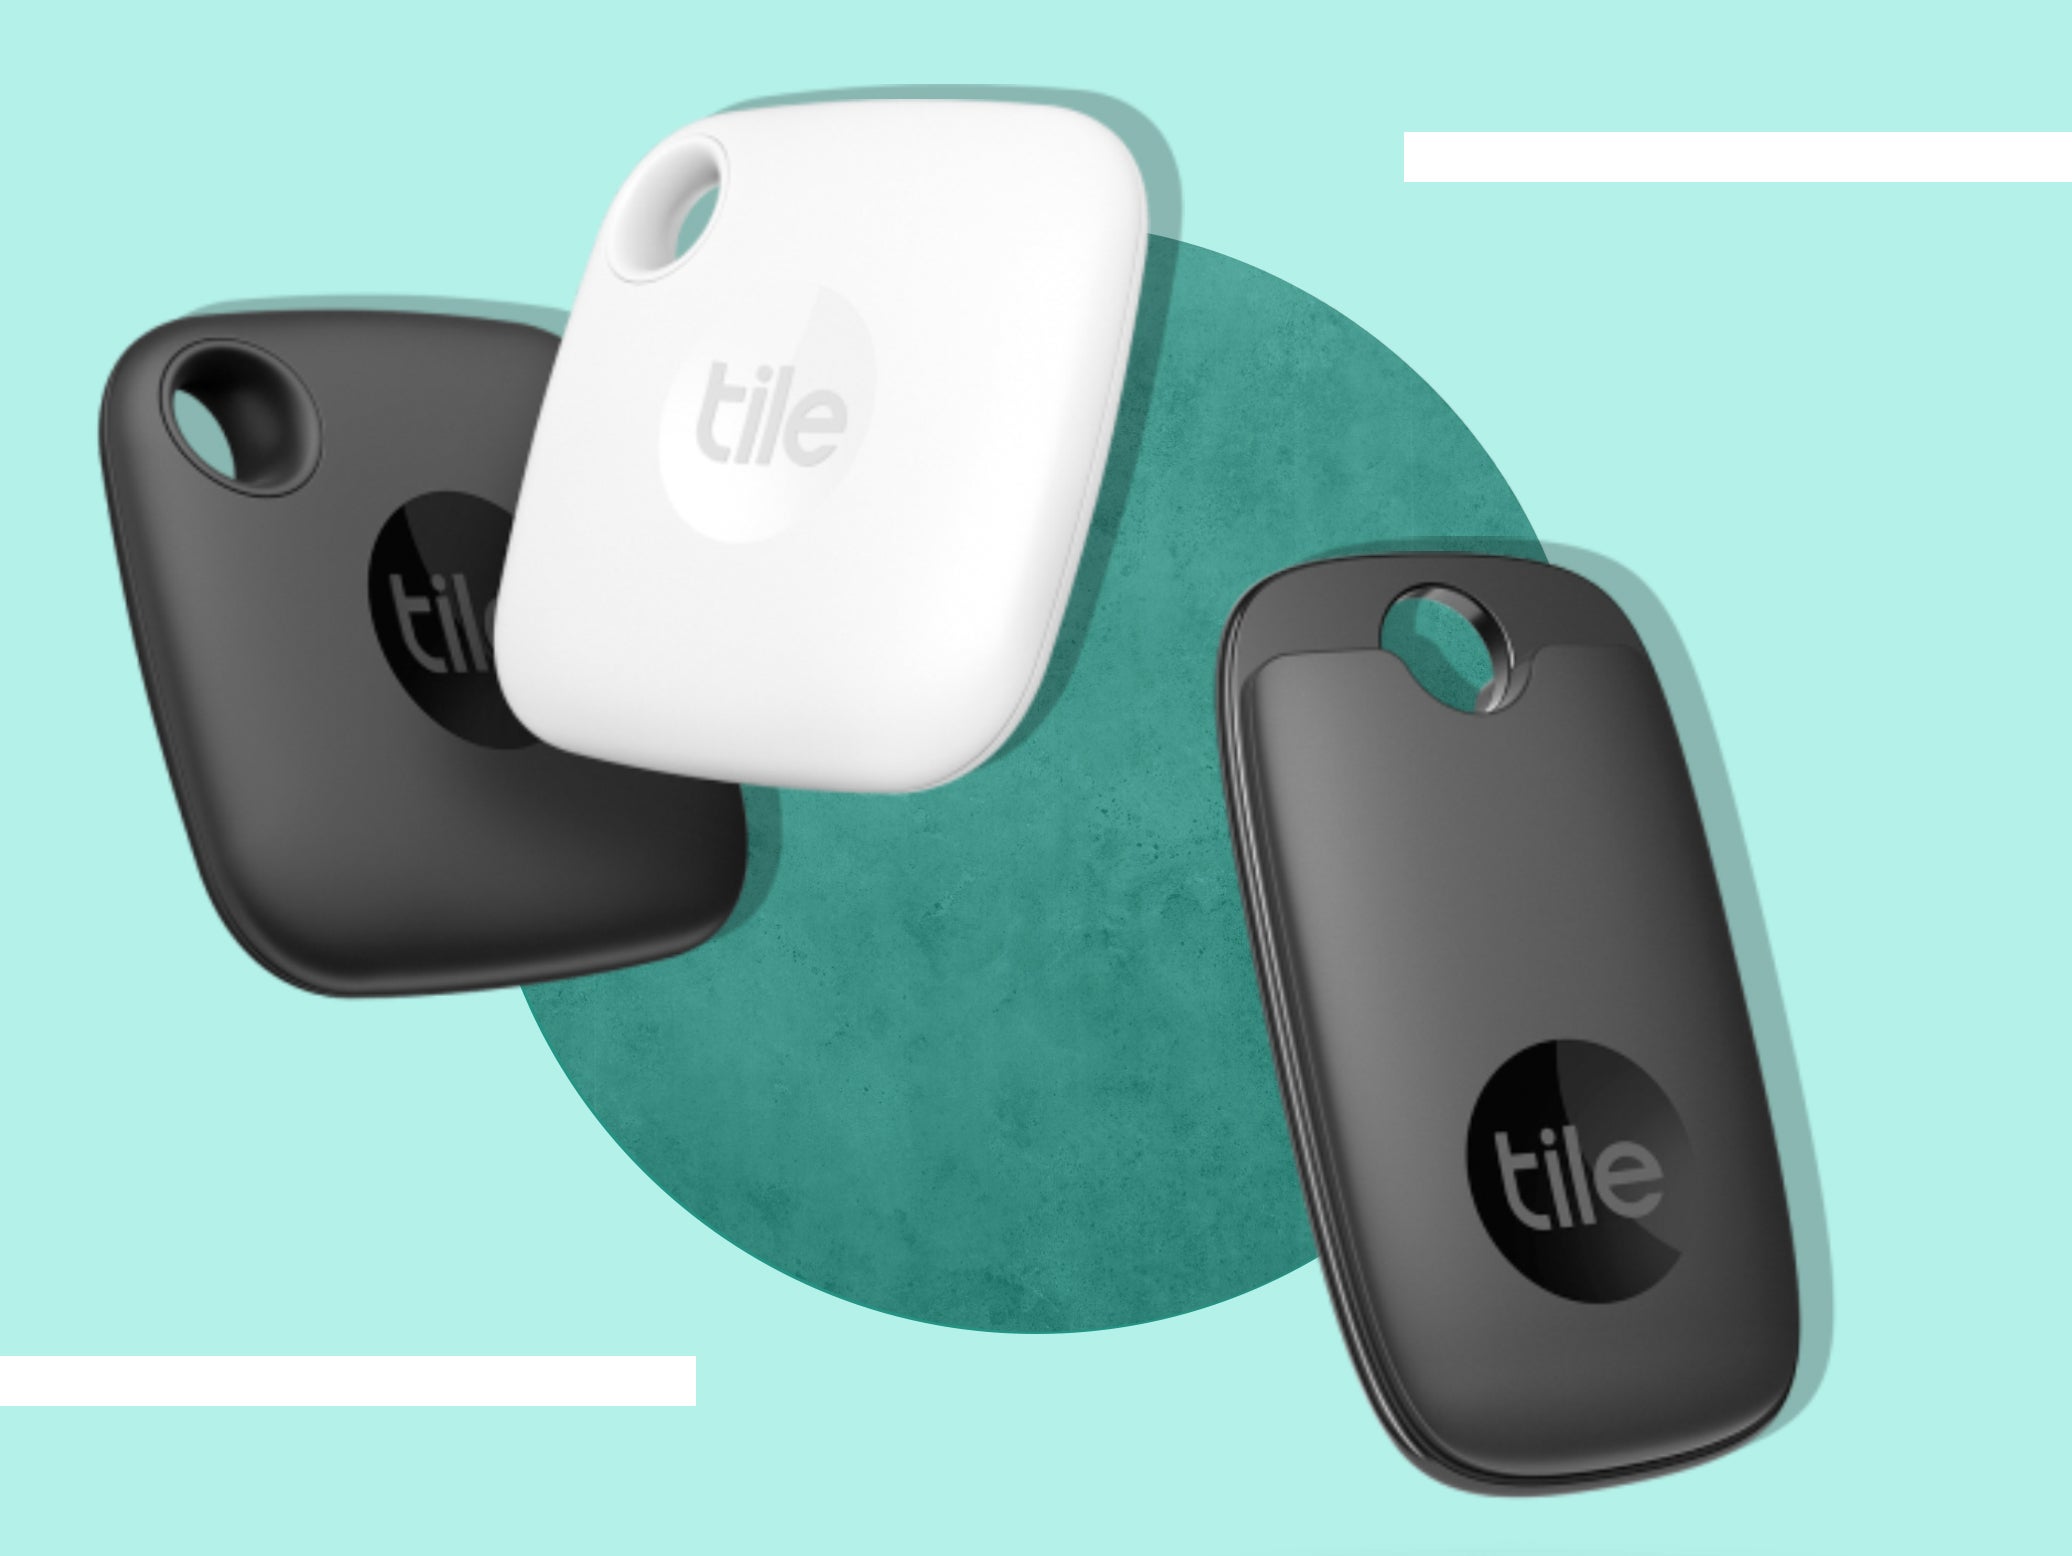 Tile introduces new key finders: Tile Pro vs. Tile Mate vs. Tile